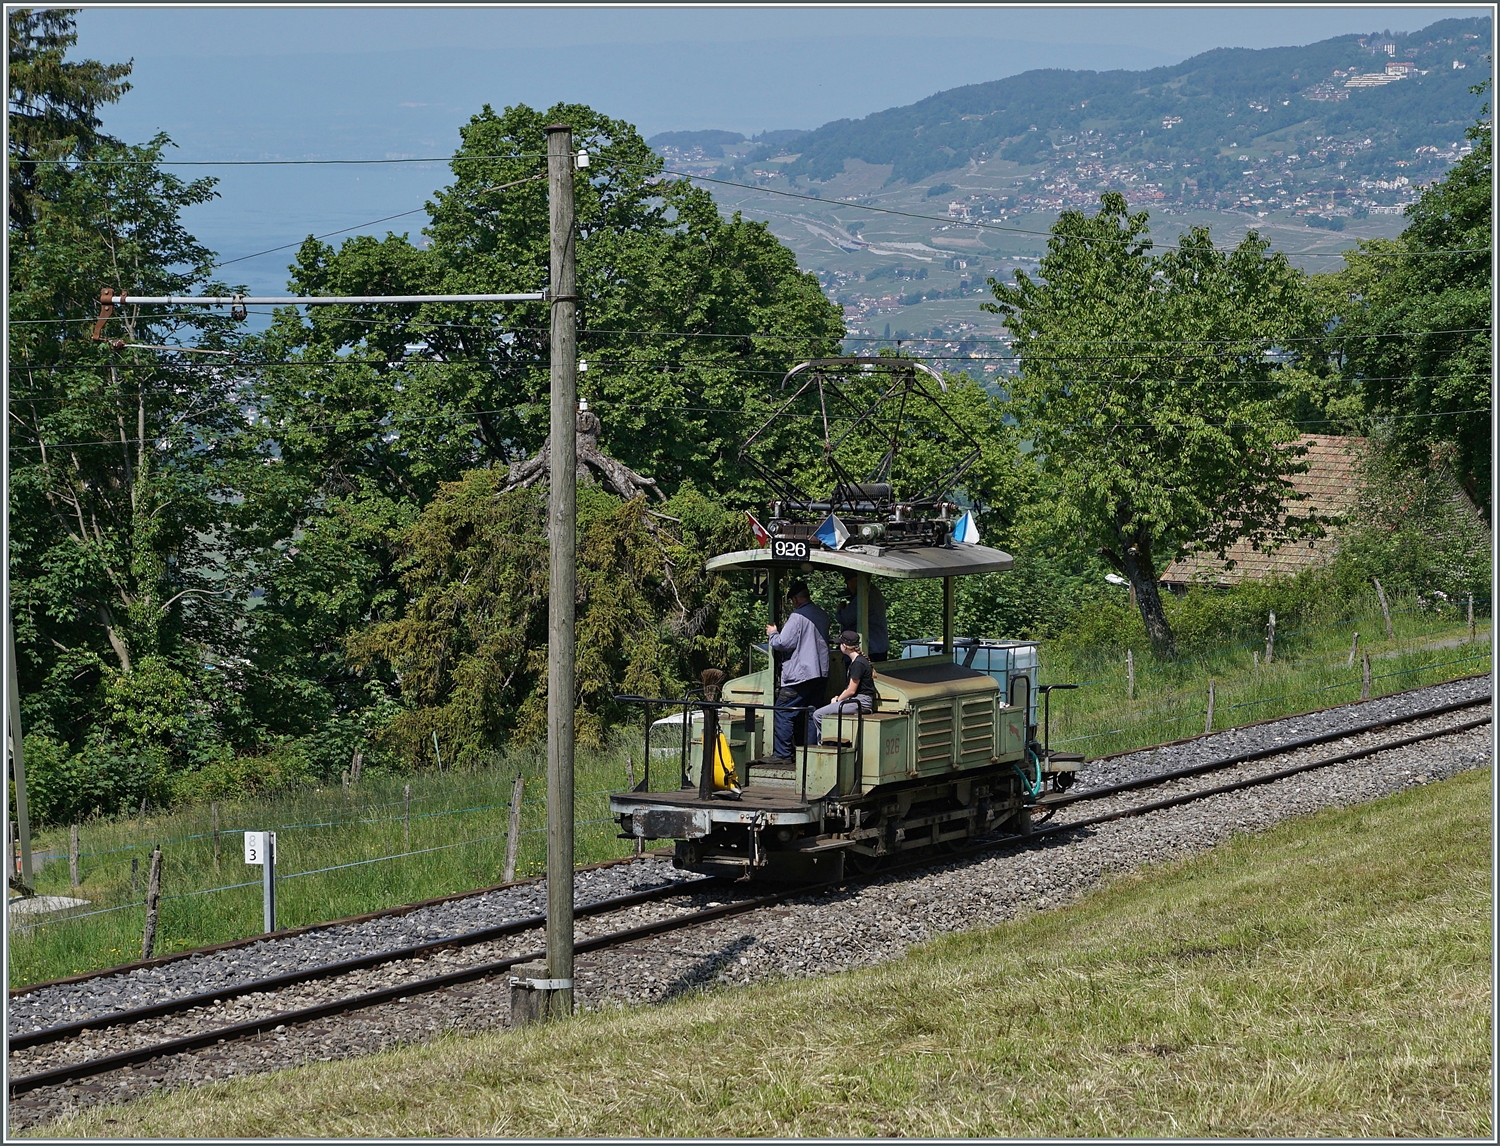 Eher selten auf der Strecke zu sehen: der VBZ Schienentraktor Te 2/2 926 ist bei Chaulin auf dem Weg nach Blonay.

29. Mai 2023